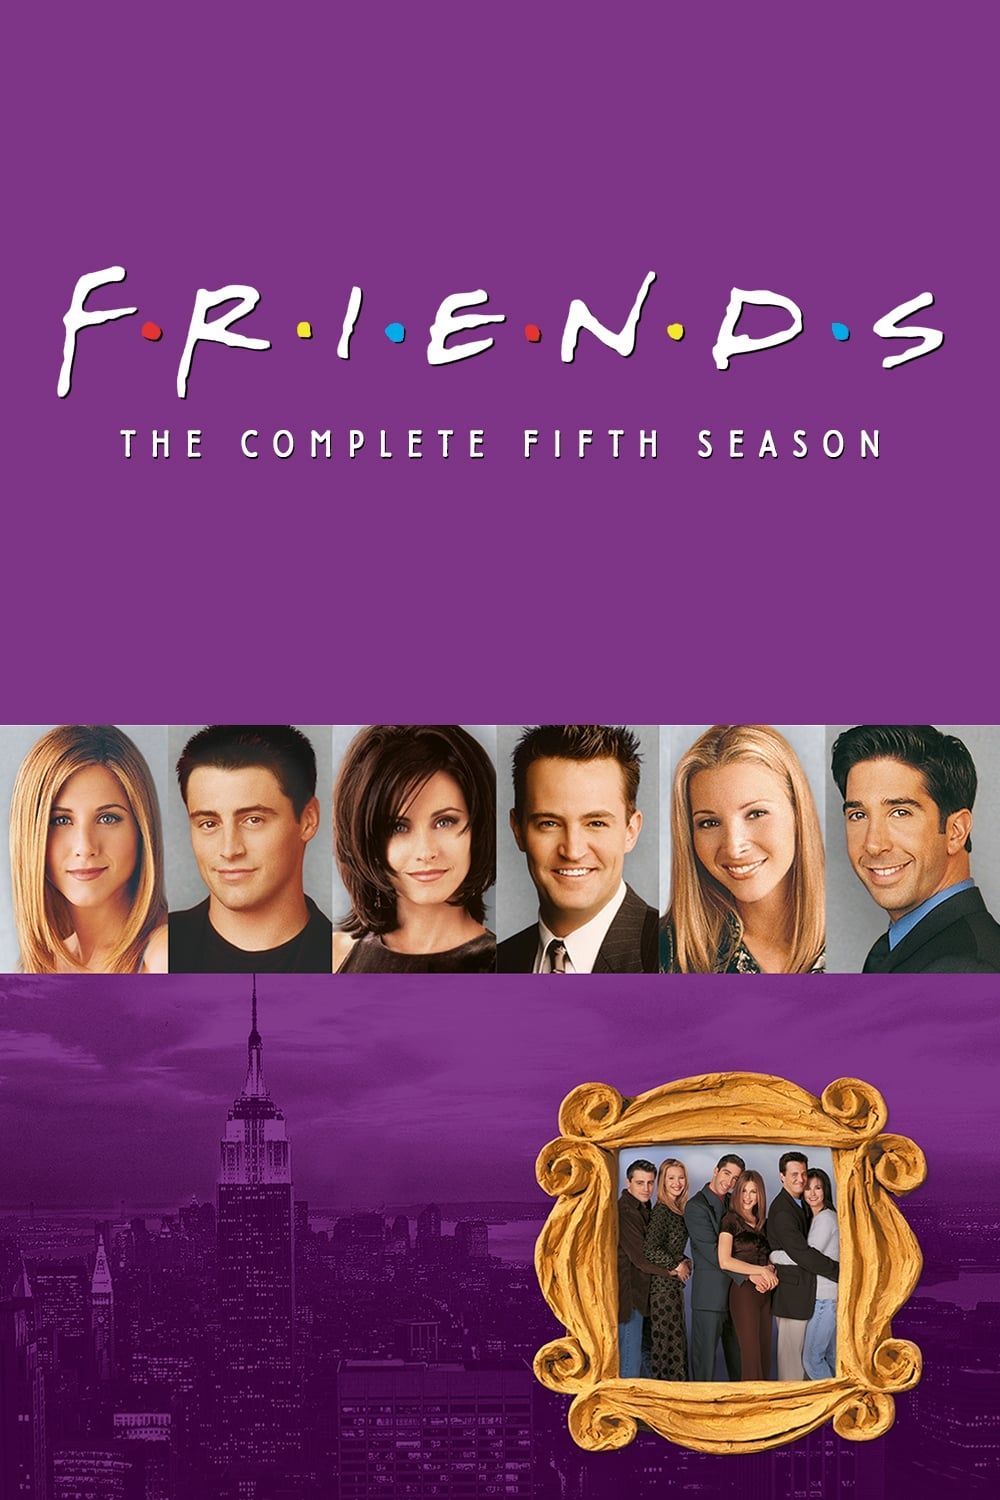 Smiling Friends Temporada 1 - assista episódios online streaming